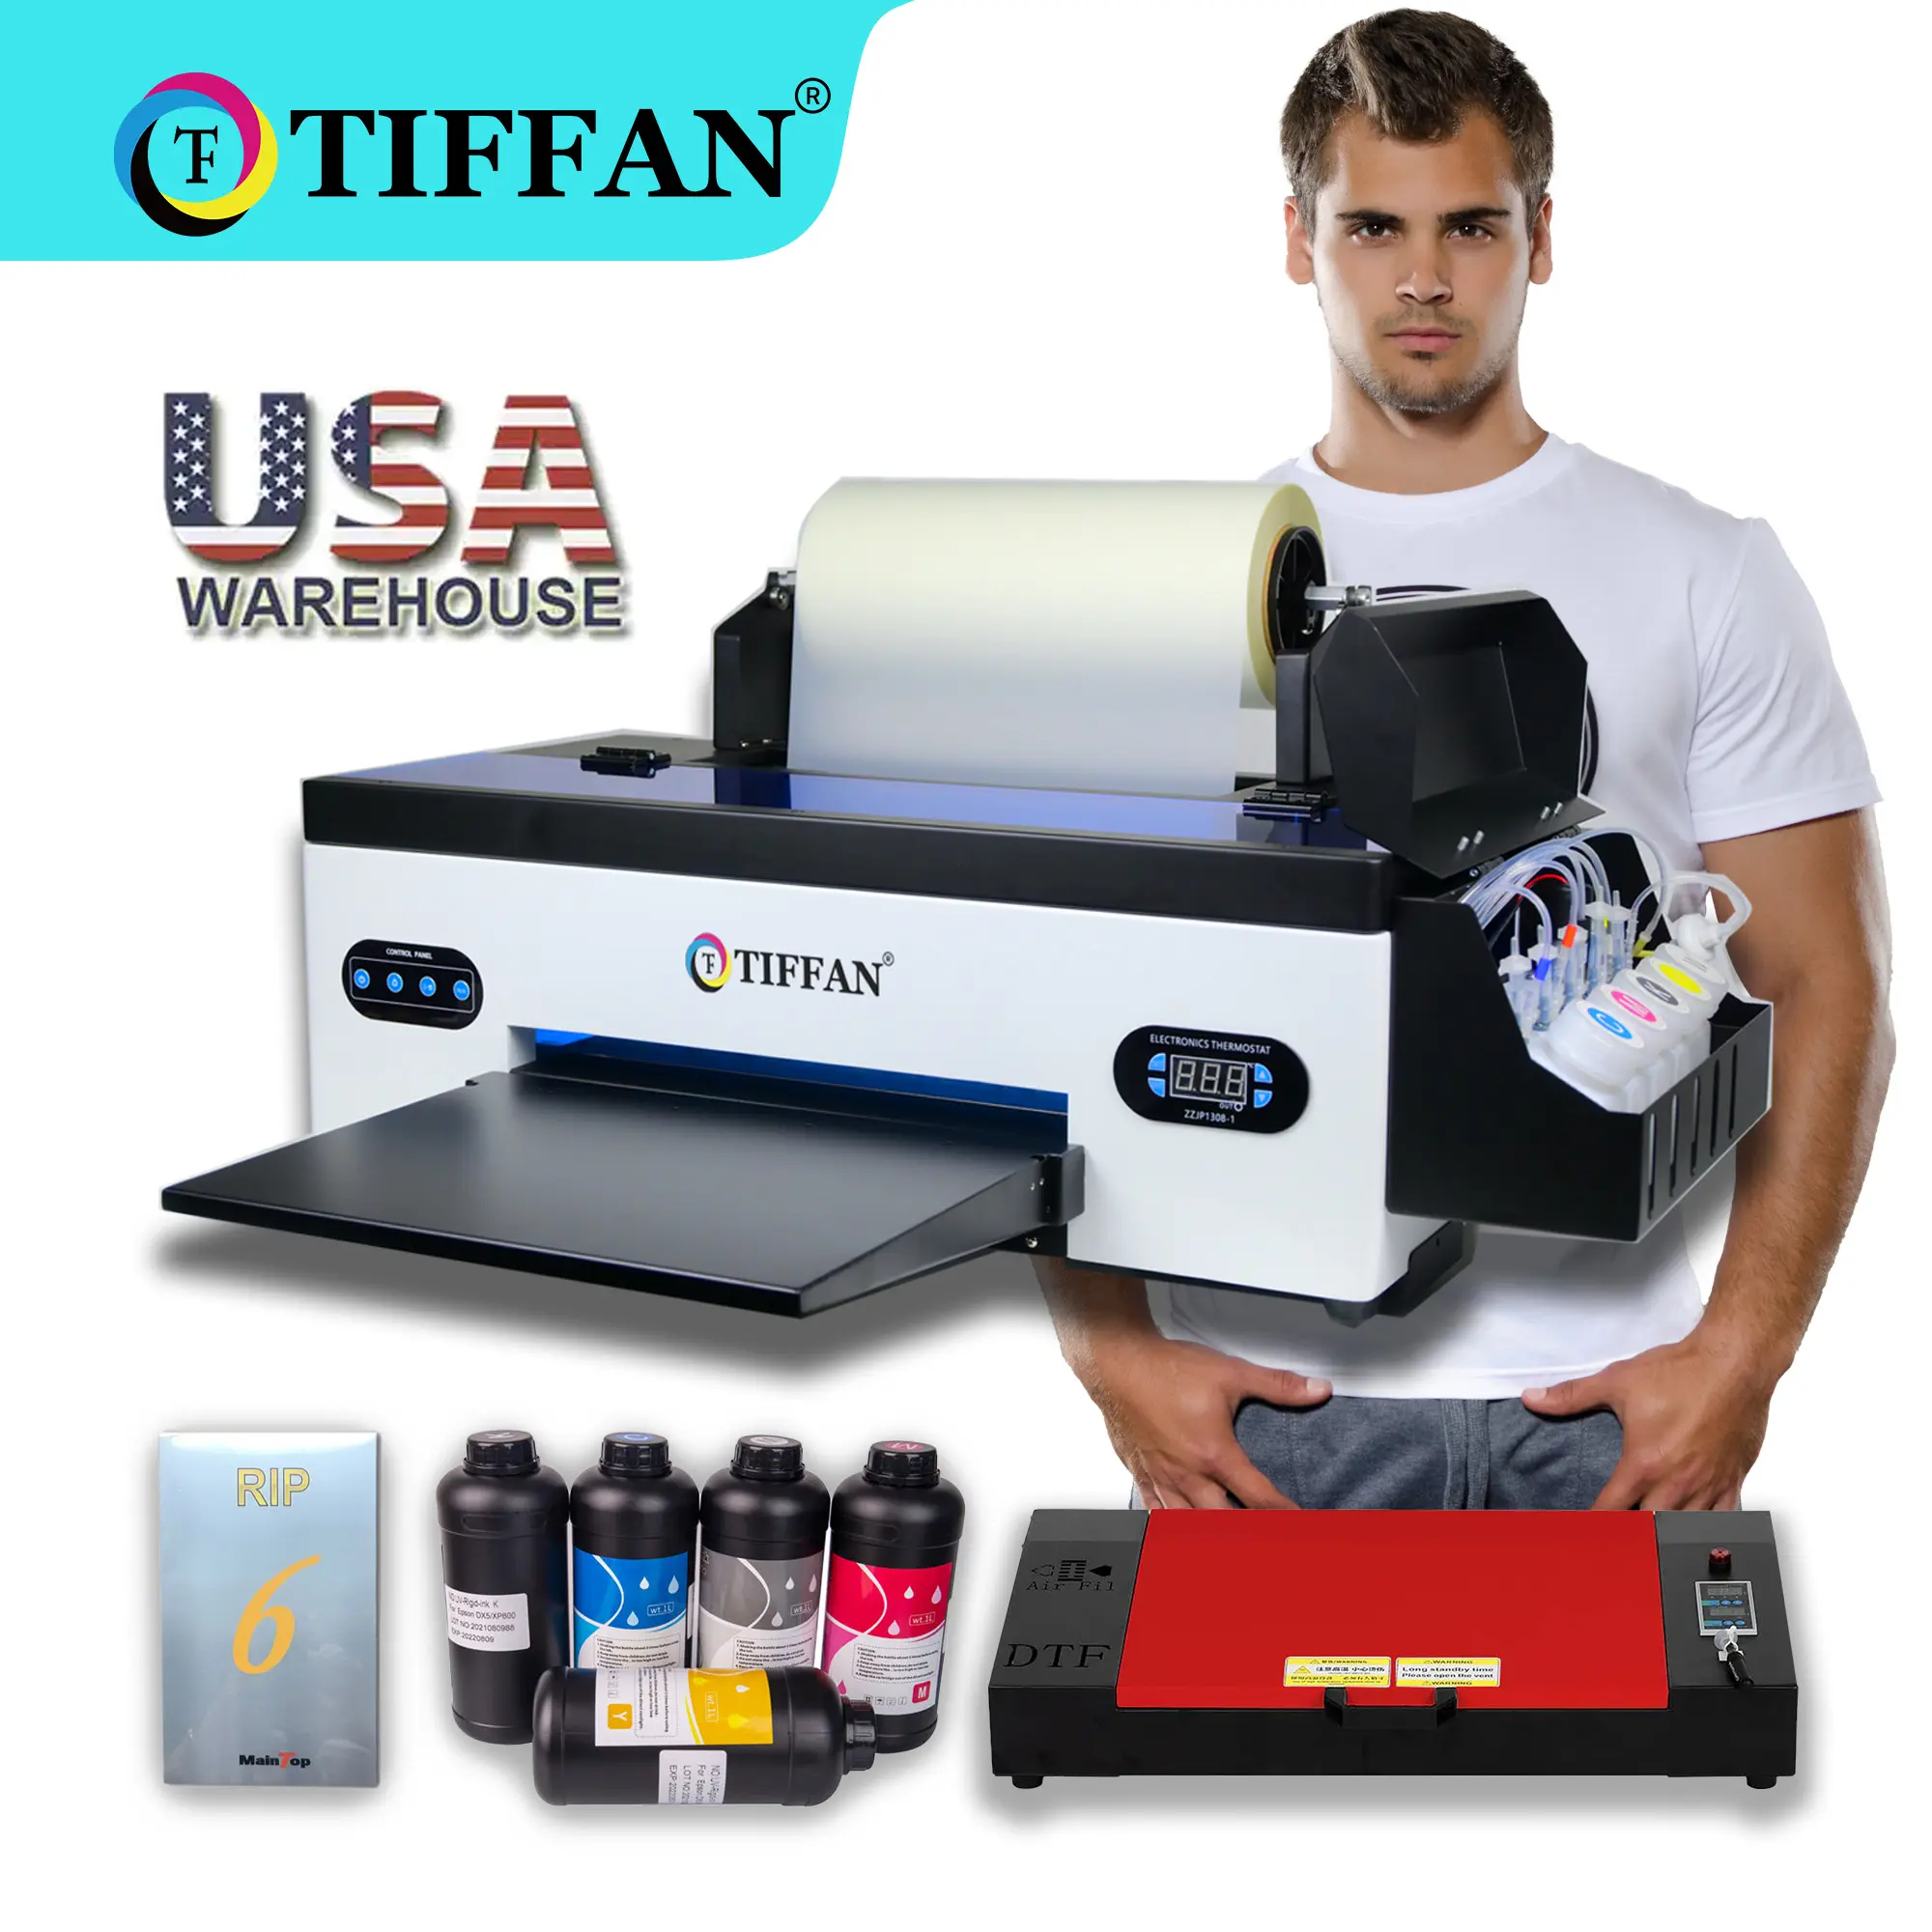 नया आगमन 12 इंच dtf प्रिंटर 24 इंच xp600 डिजिटल टी शर्ट 60 सेमी ए 3 dtf फ्लैटबेड प्रिंटर dtf-शर्ट प्रिंटिंग मशीन